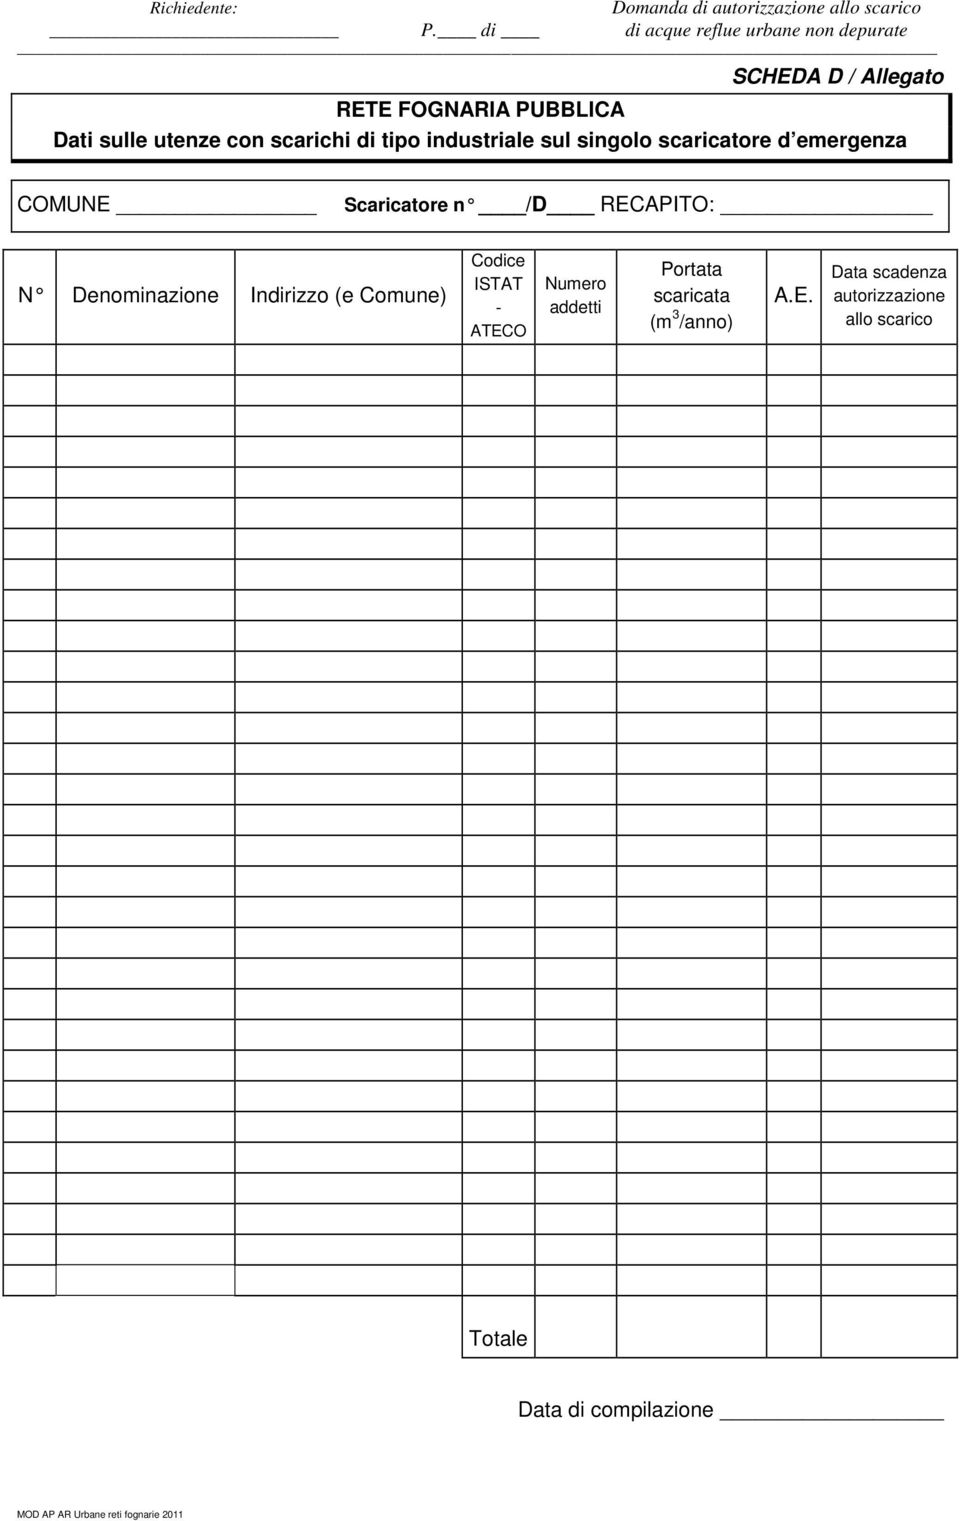 Denominazione Indirizzo (e Comune) Codice ISTAT - ATECO Numero addetti Portata